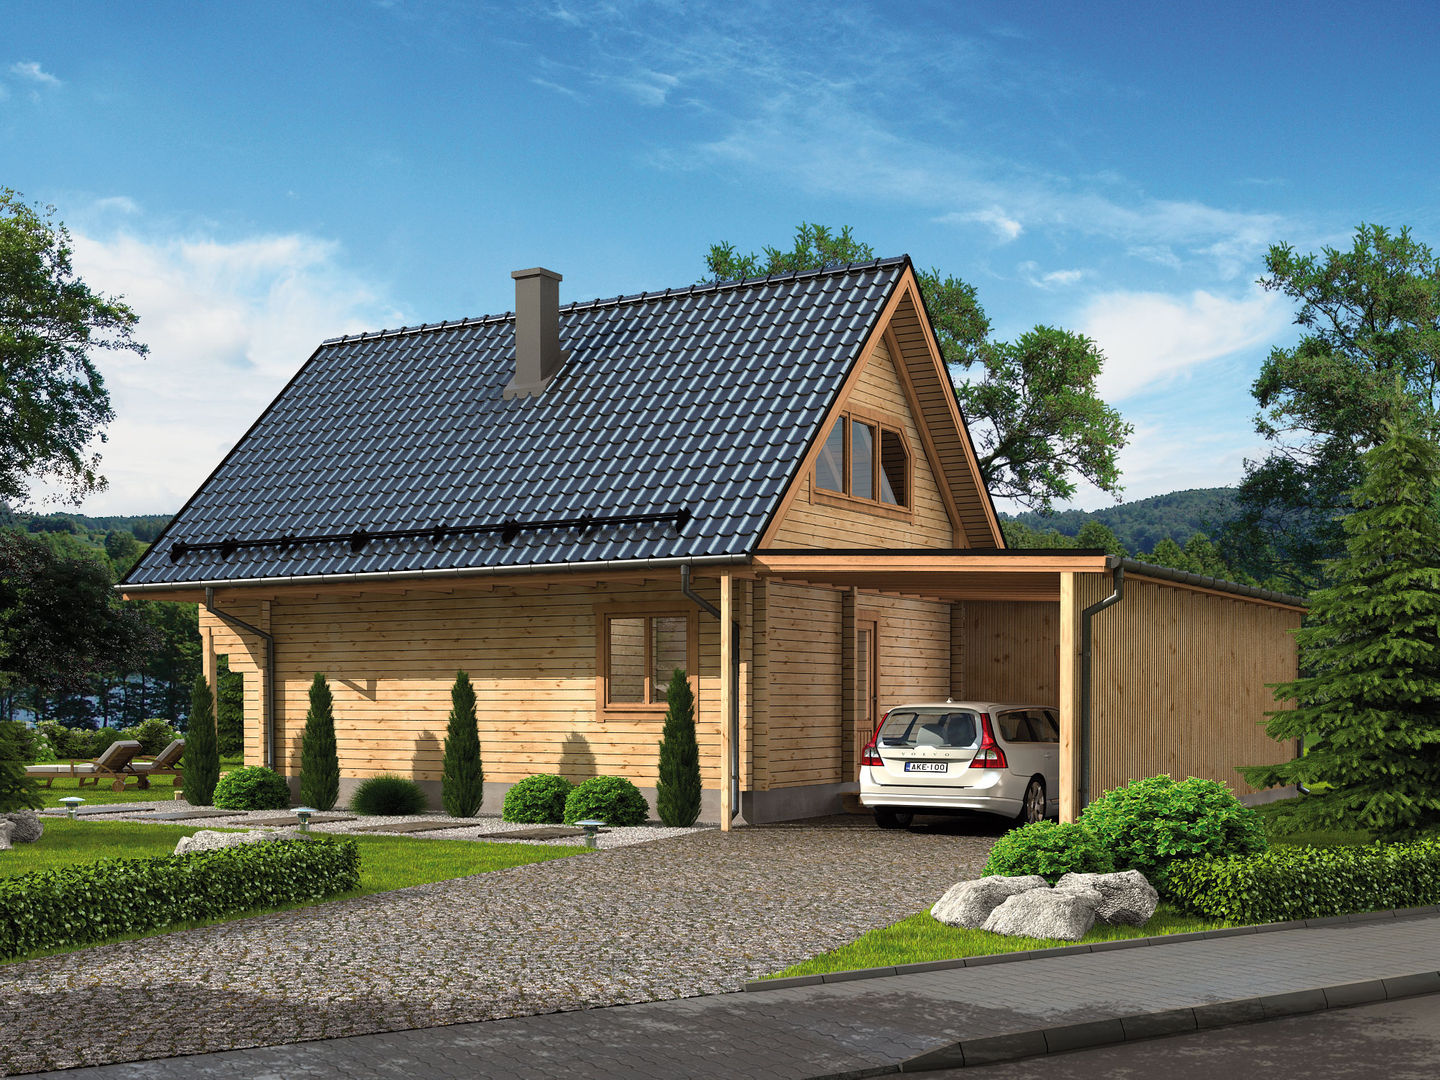 Ferienhaus Fjord mit Carport Vorderseite THULE Blockhaus GmbH - Ihr Fertigbausatz für ein Holzhaus Rustikale Häuser